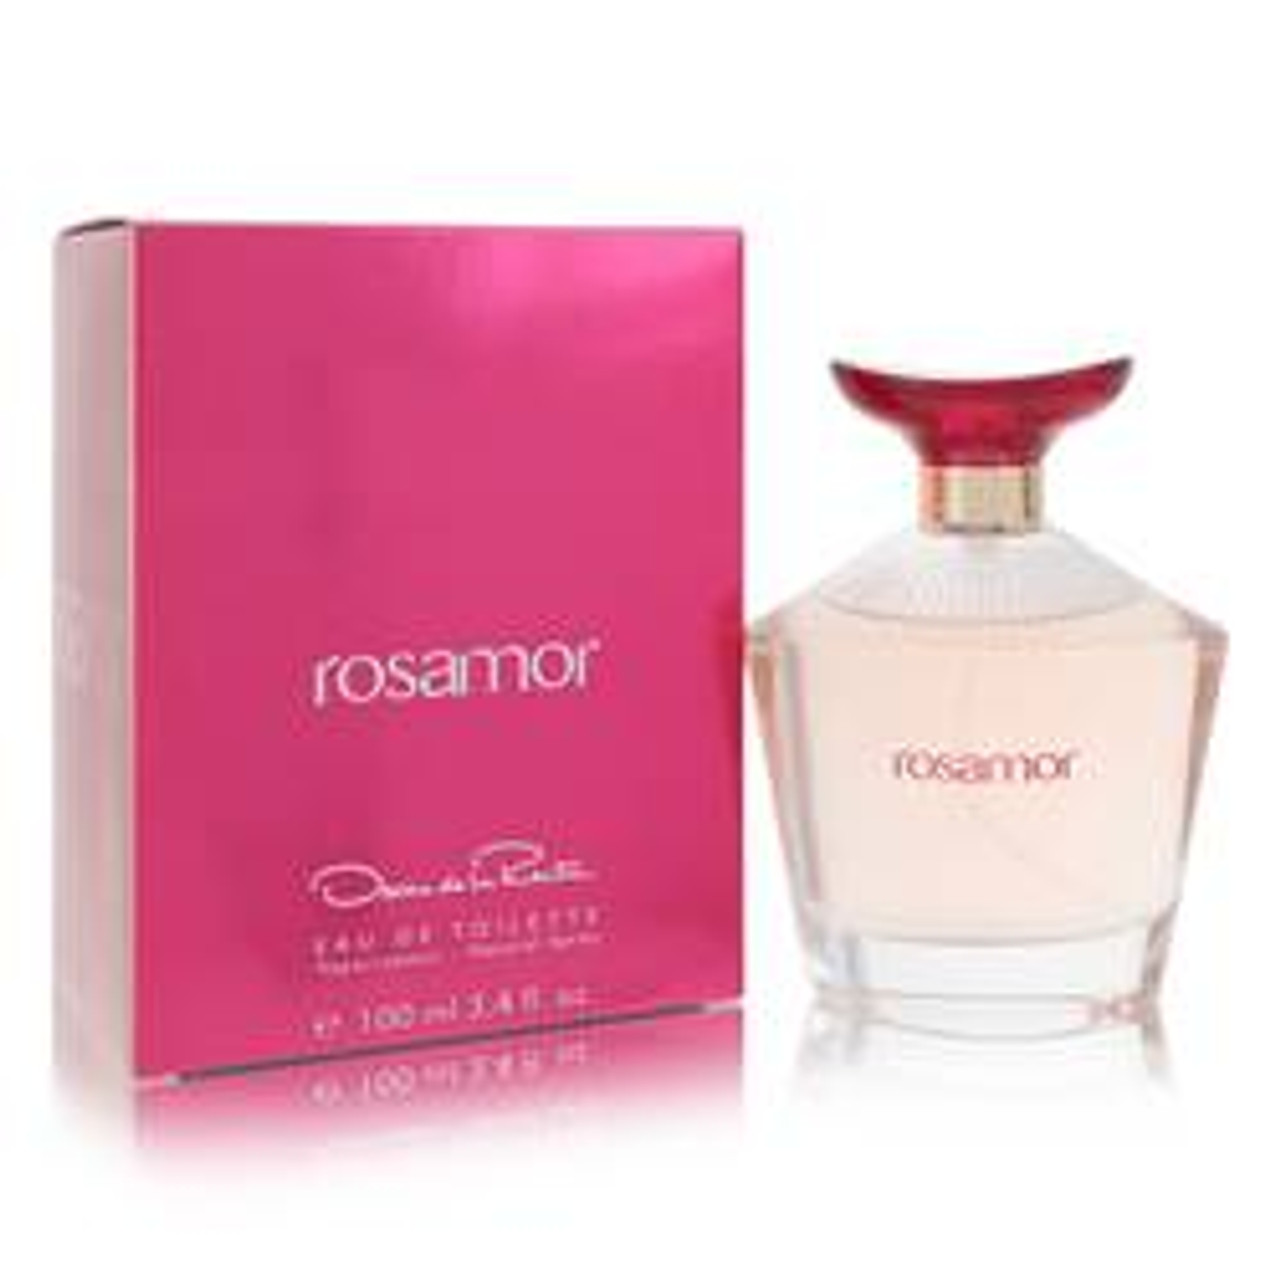 Rosamor Perfume By Oscar De La Renta Eau De Toilette Spray 3.4 oz for Women - [From 63.00 - Choose pk Qty ] - *Ships from Miami